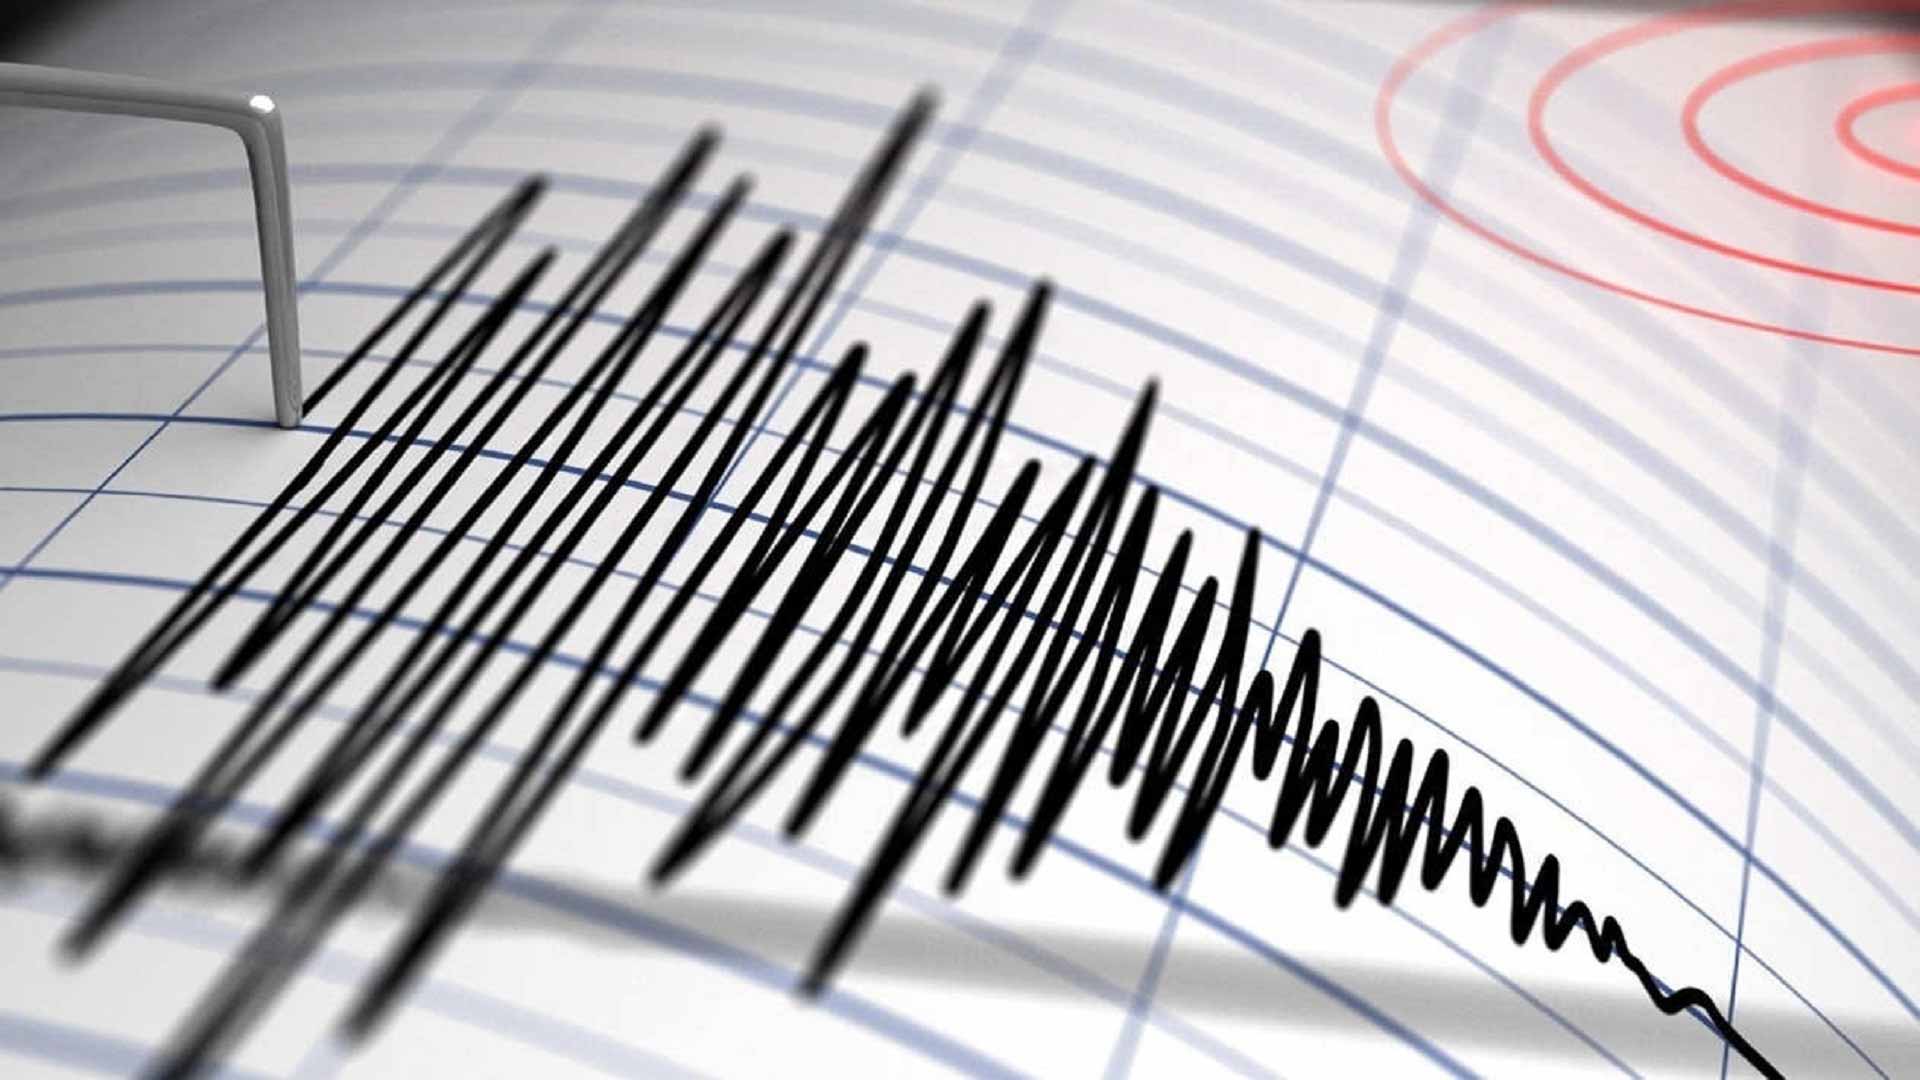 Magnitude 6.1 earthquake strikes Sumatra, Indonesia